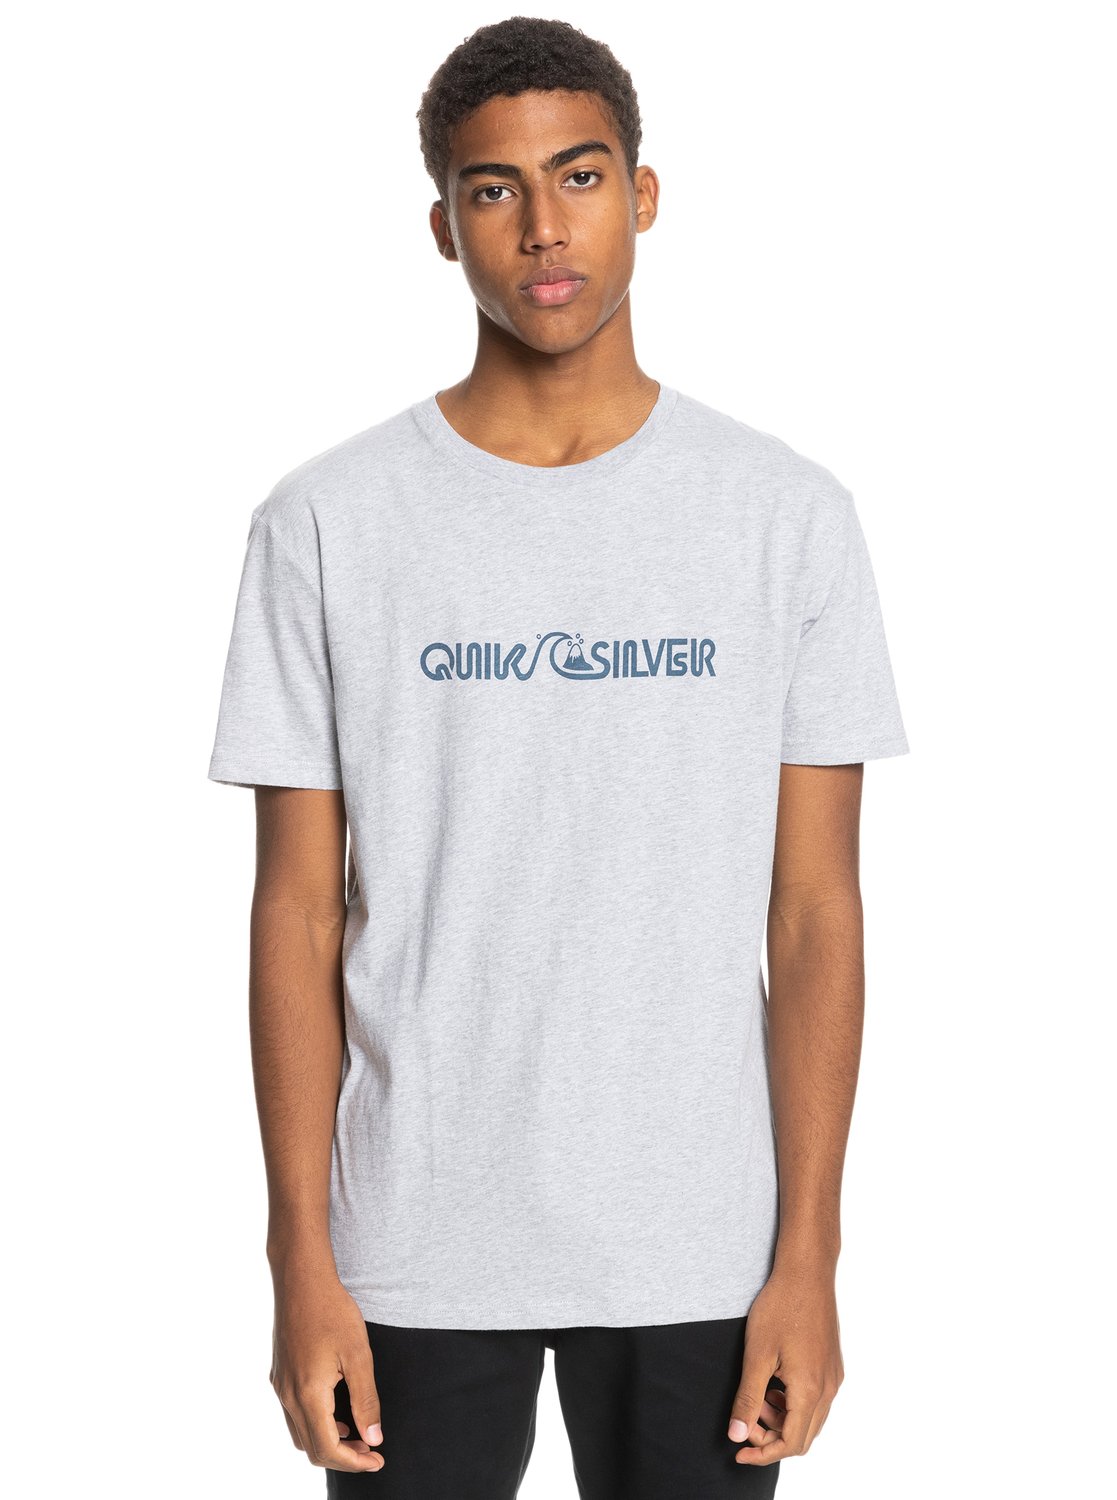 Quiksilver T-Shirt »Lightning Express« von Quiksilver